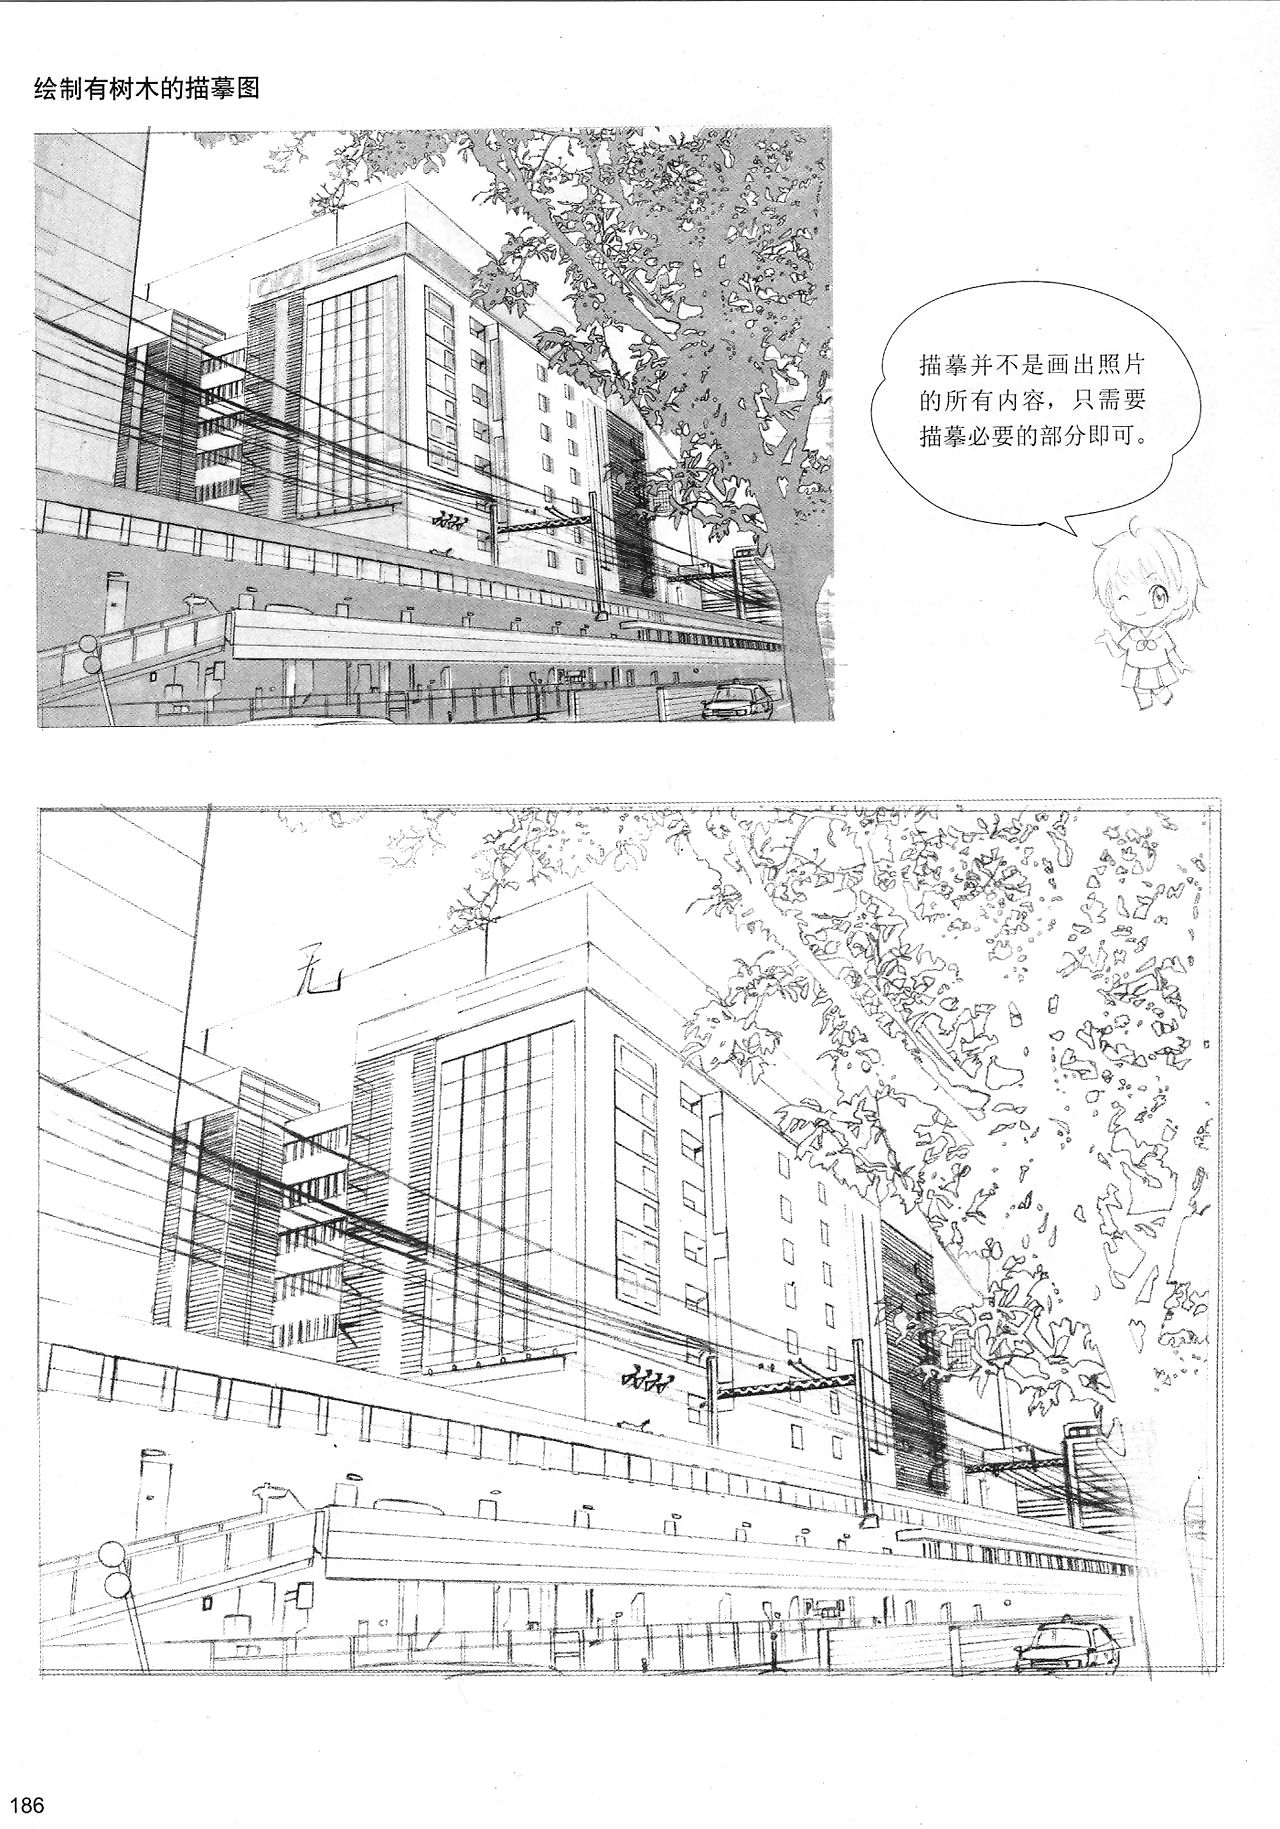 In what way yon Make advances Manga: Sketching Manga-Style Extent 4: Enveloping To Ken - accouterment 10